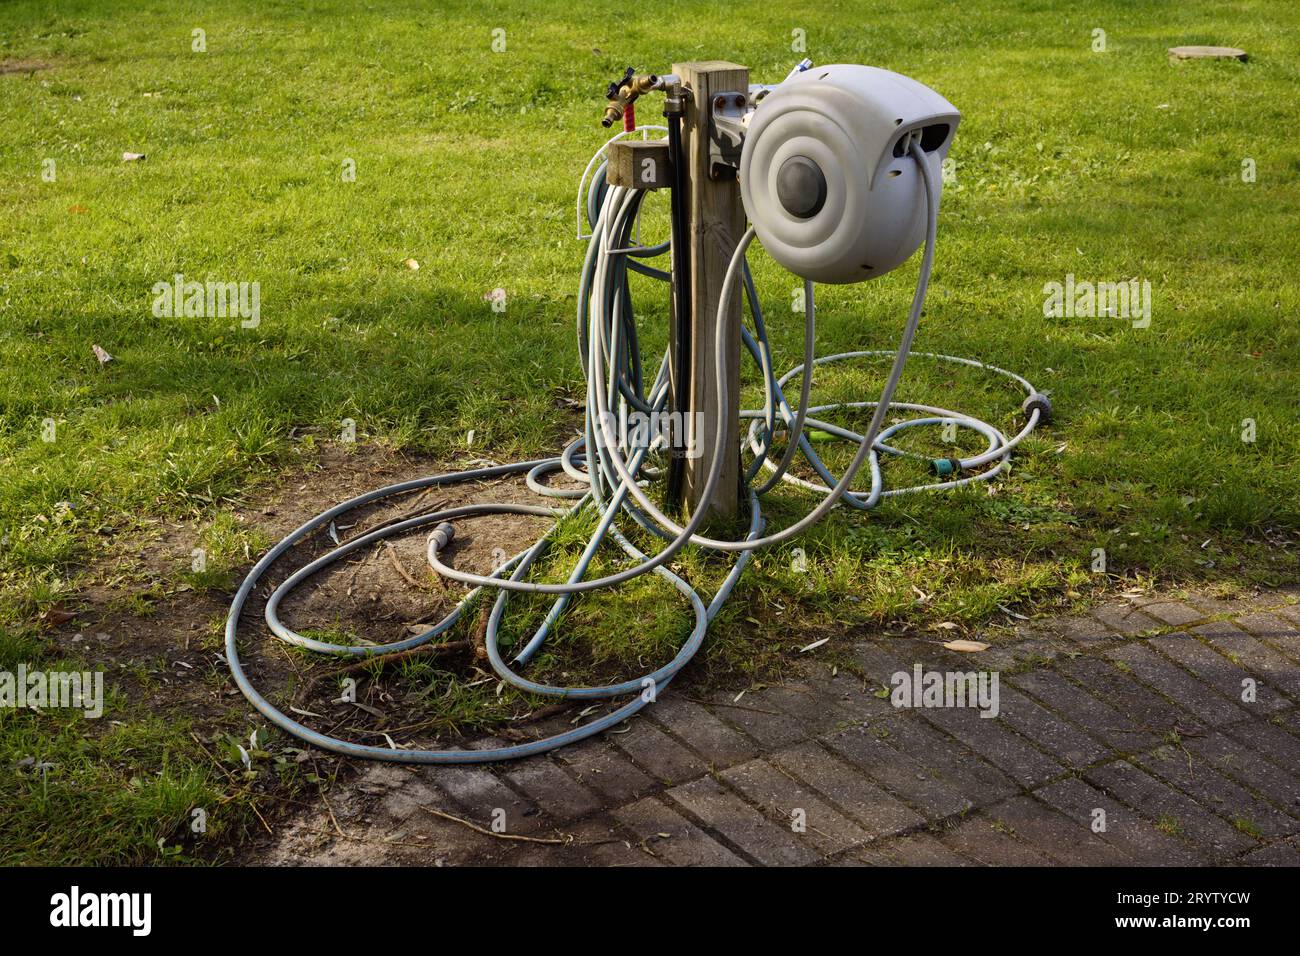 Garden hose reel on green lawn in backyard Stock Photo